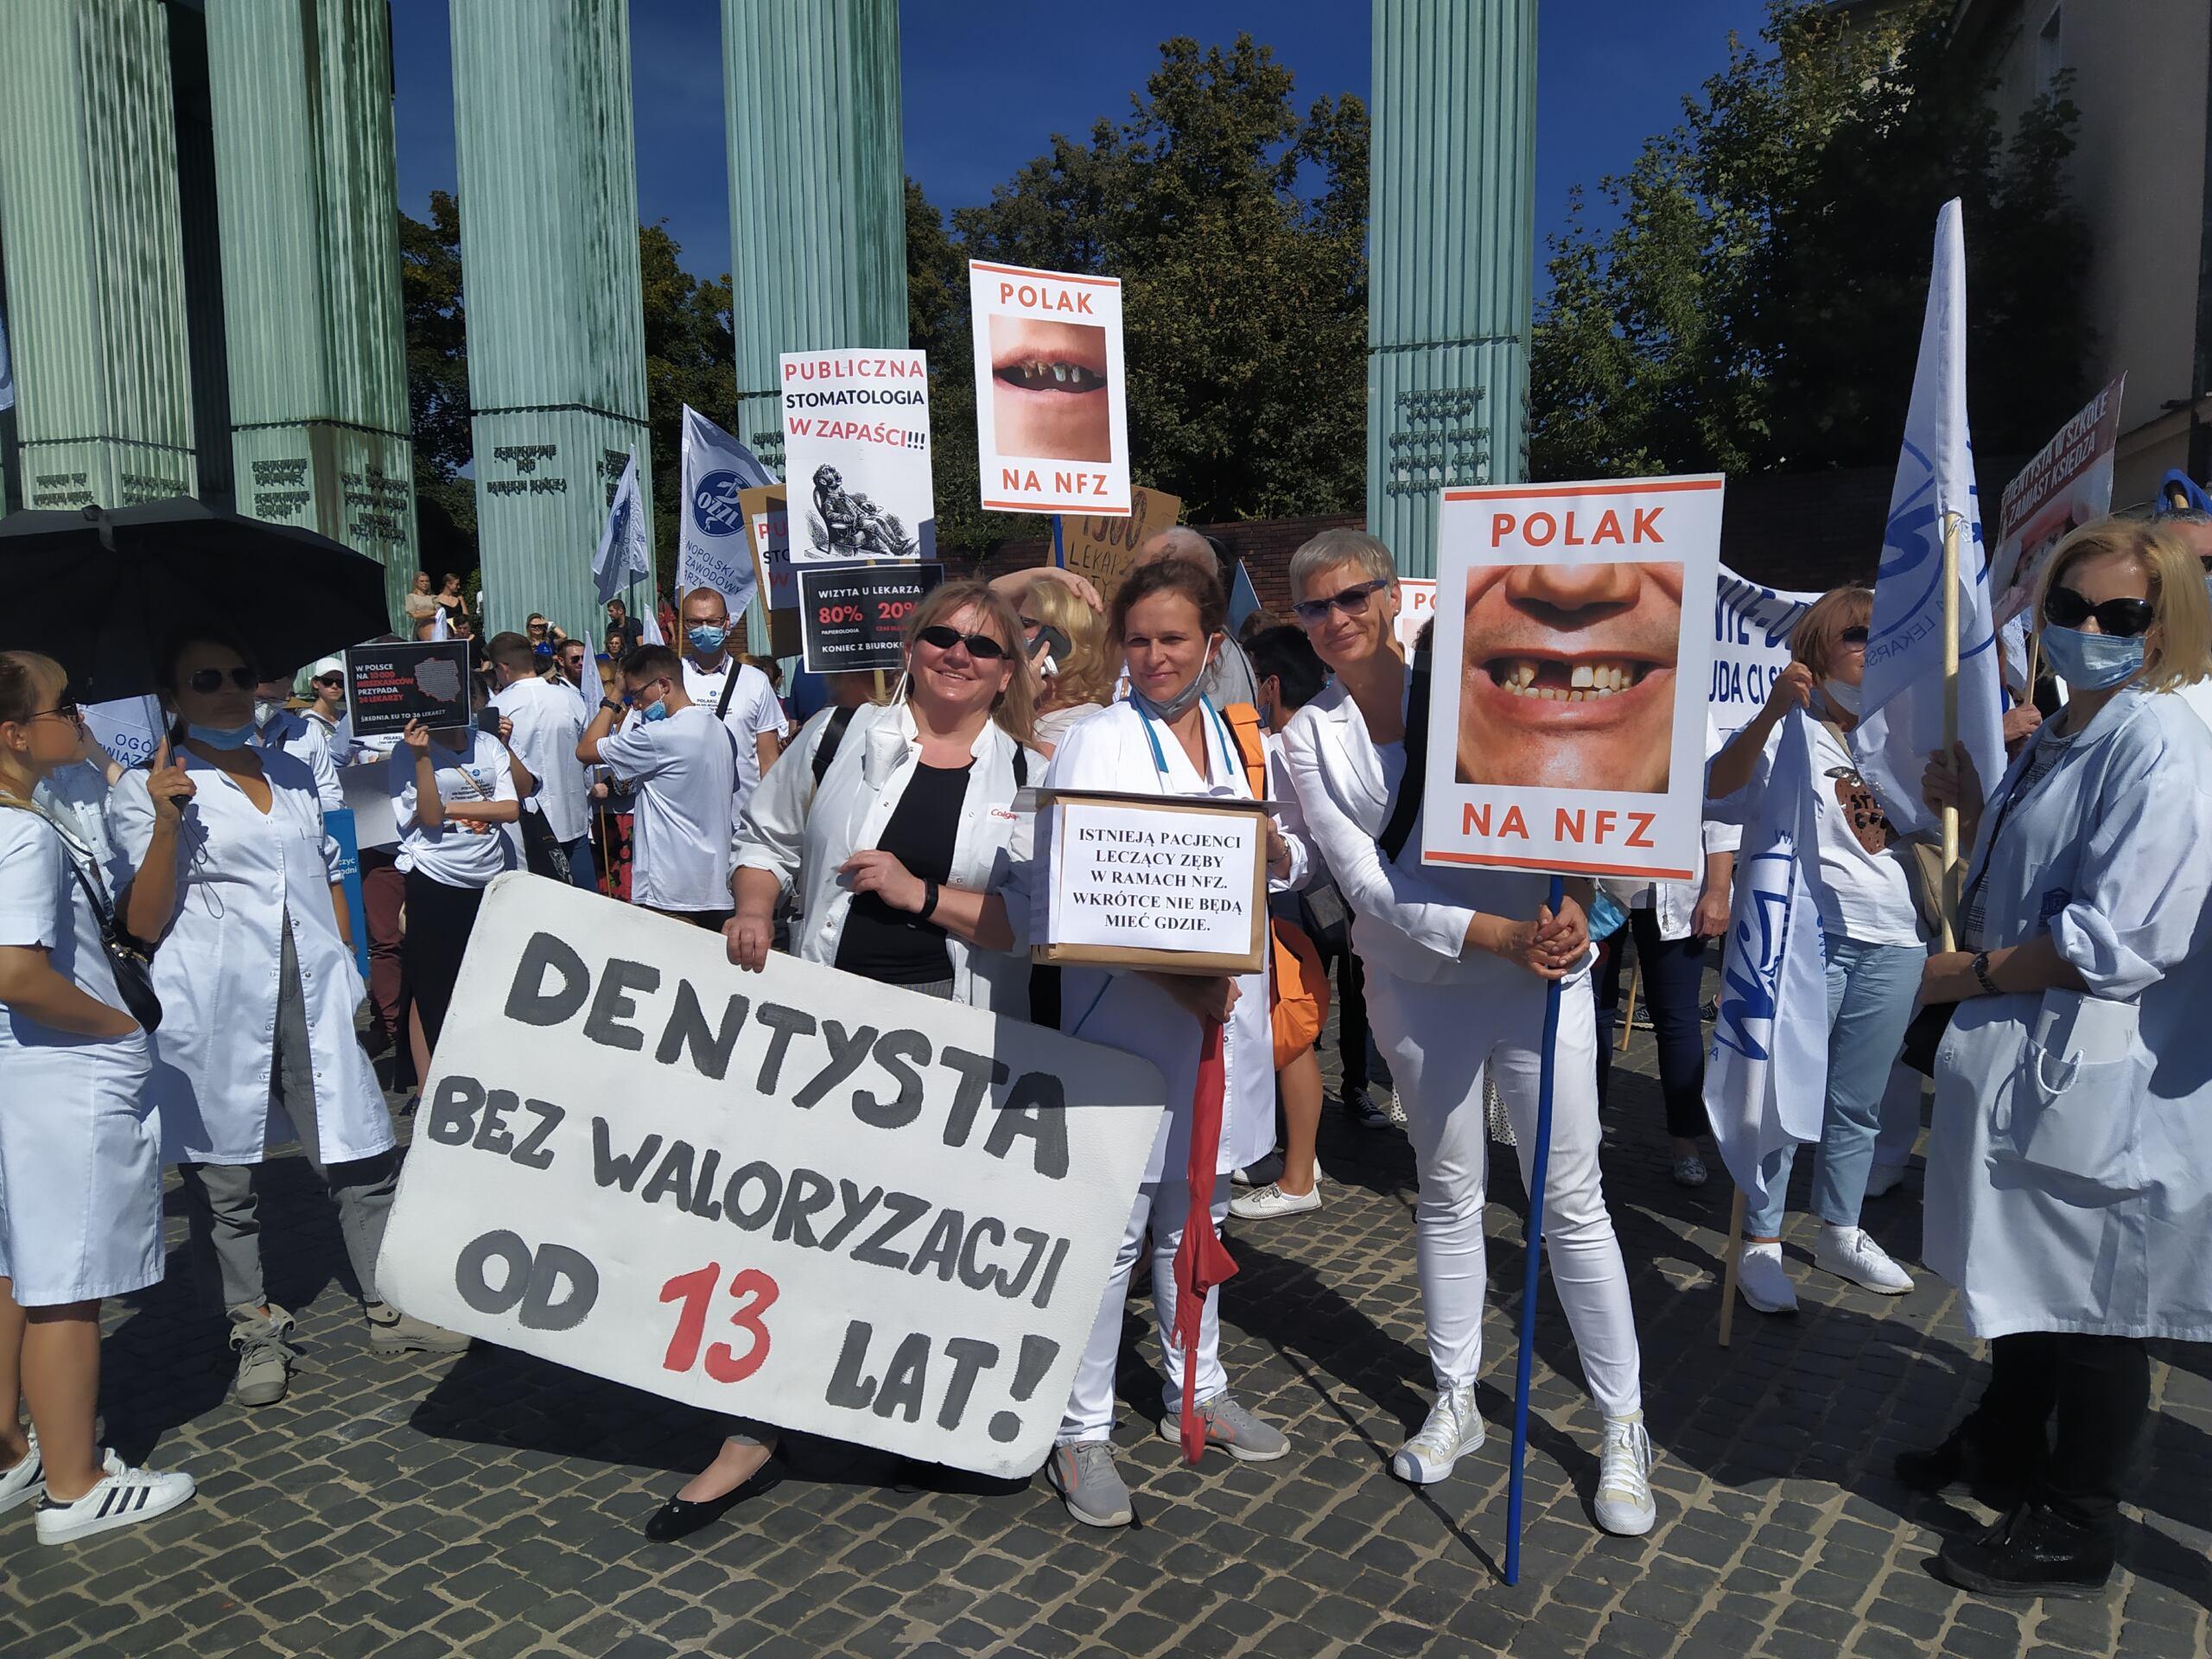 Lekarze dentyści trzymają transparent z napisem "Dentysta bez waloryzacji od 13 lat"